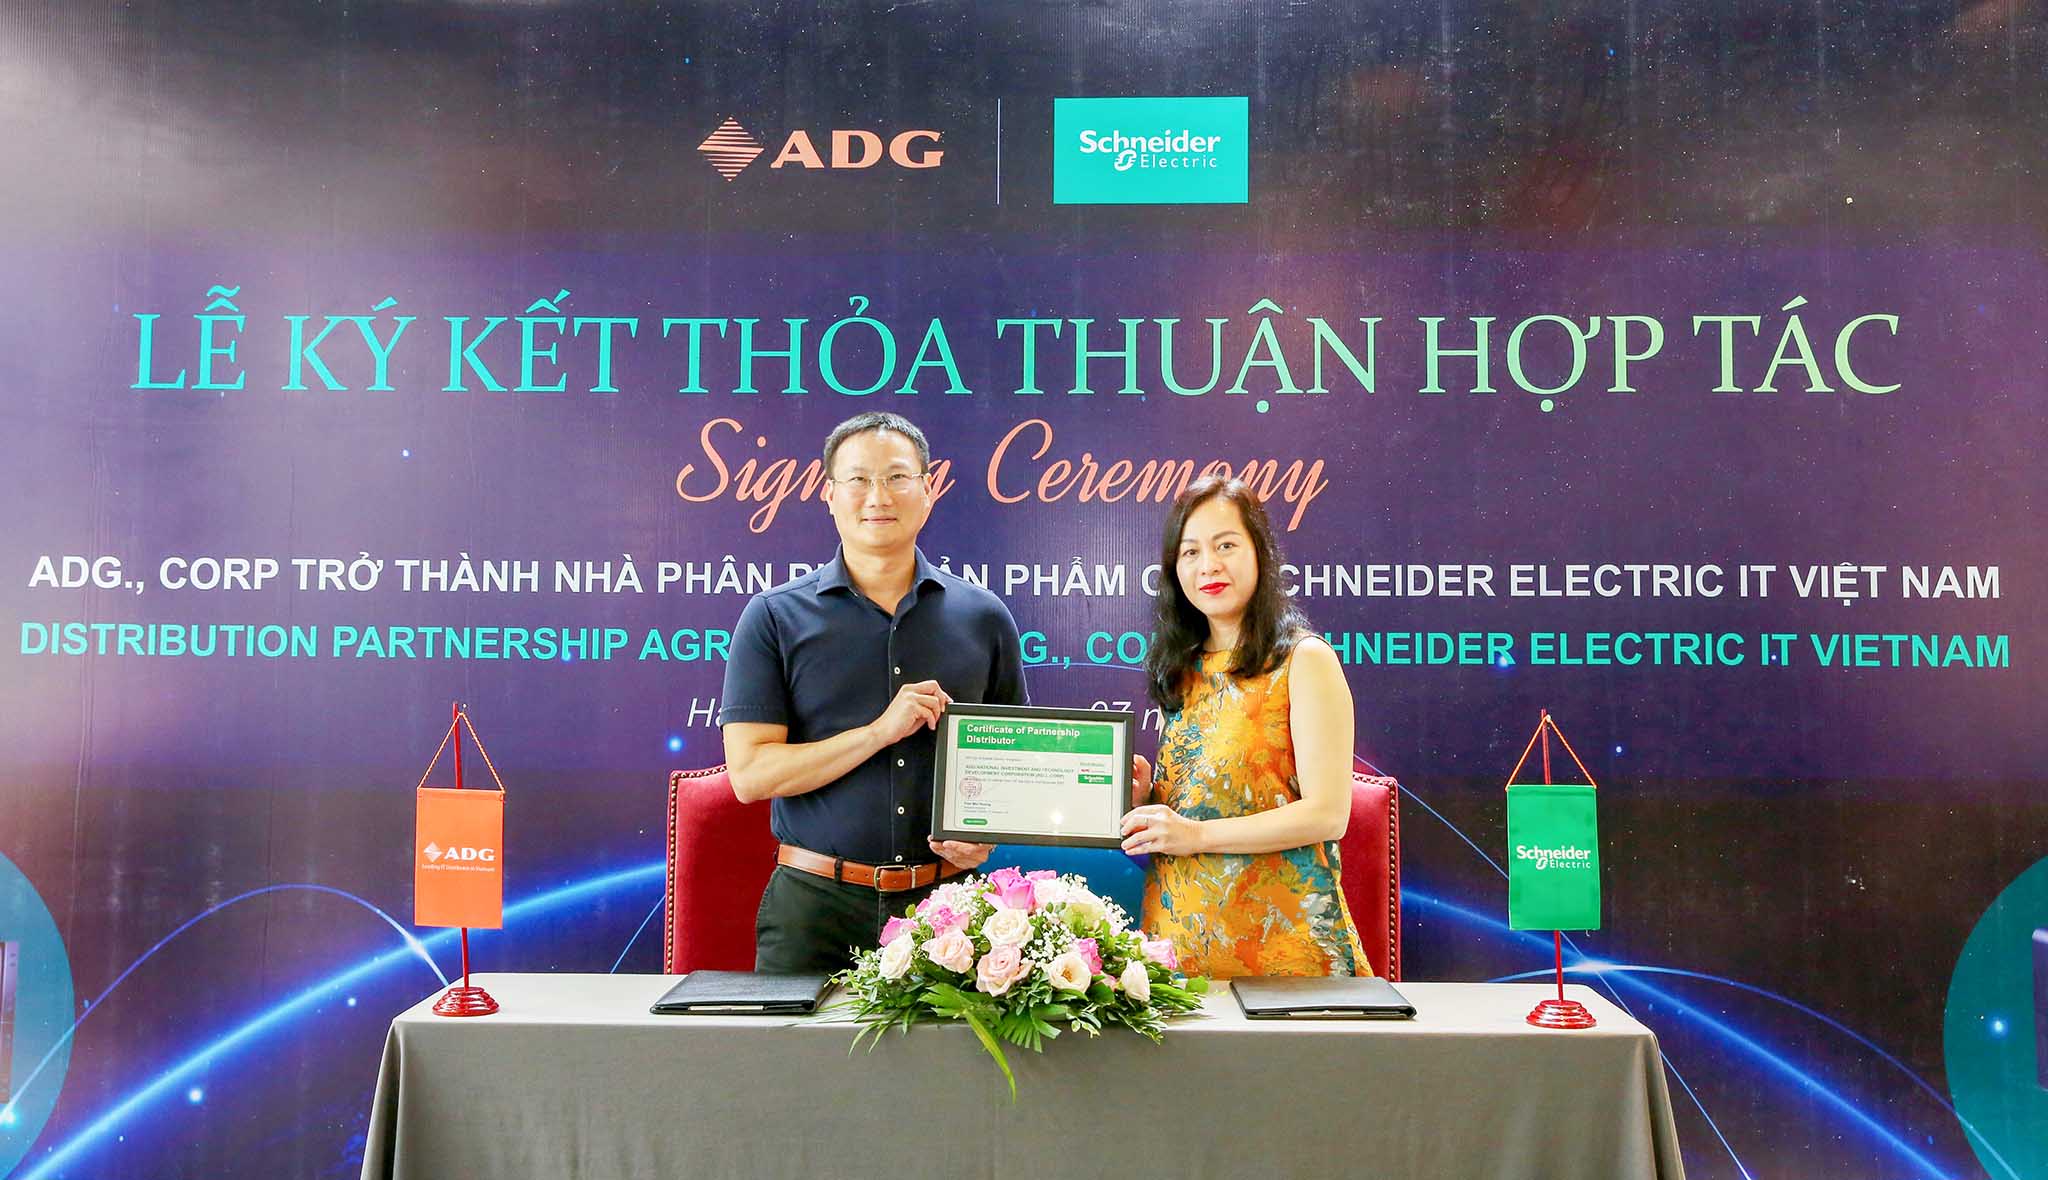 ADG chính thức trở thành nhà phân phối sản phẩm của Schneider Electric IT Việt Nam